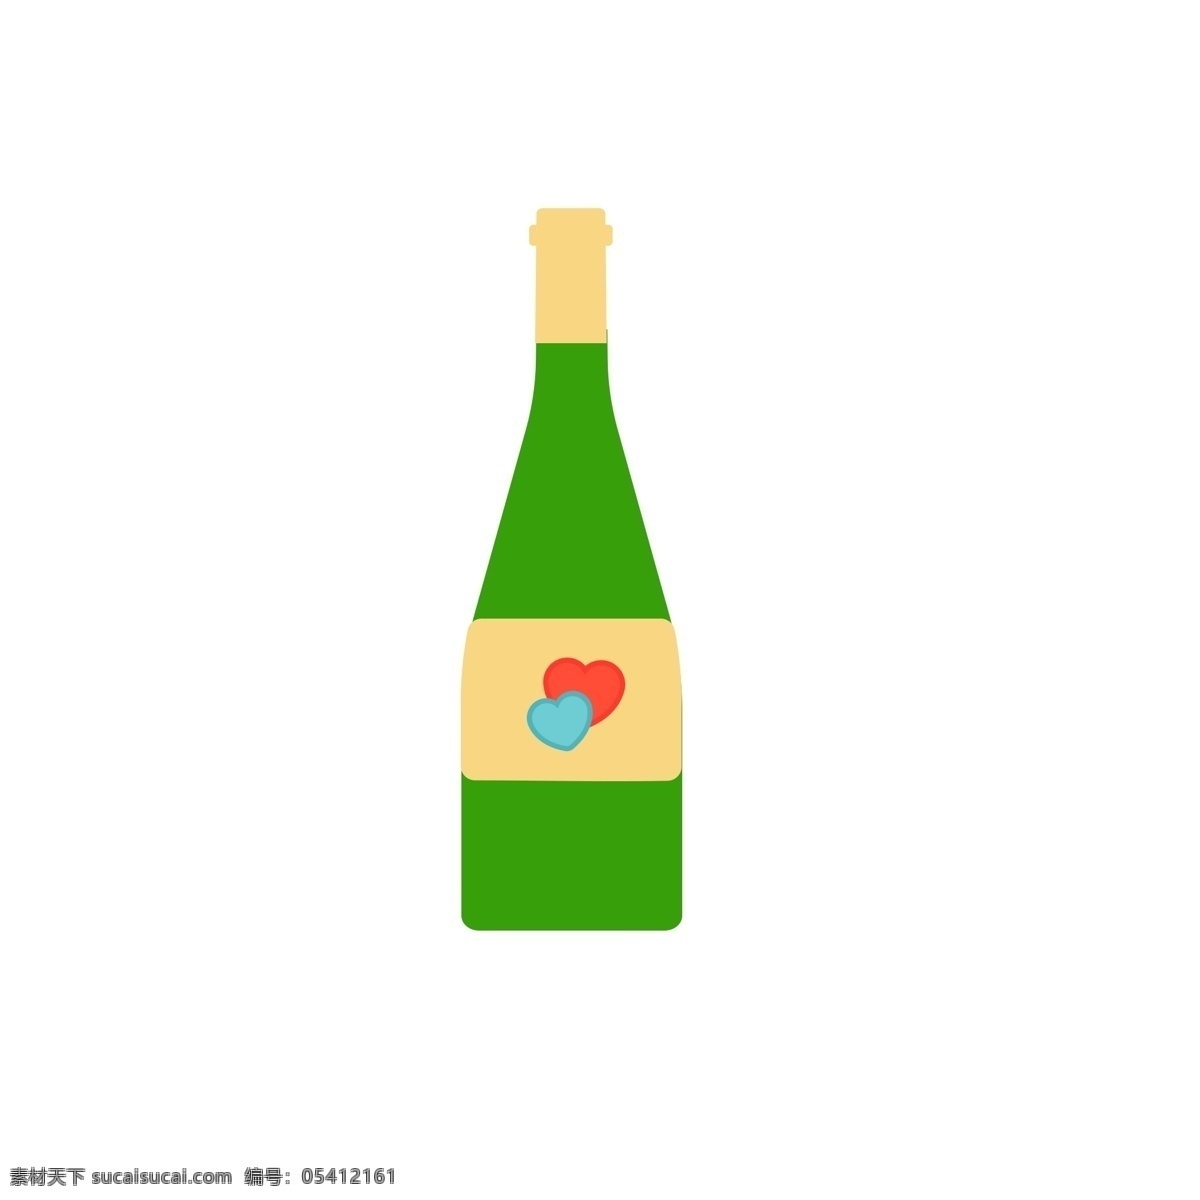 酒瓶 饮料瓶 水瓶 绿色 玻璃 瓶子 爱心 密封 瓶盖 易碎